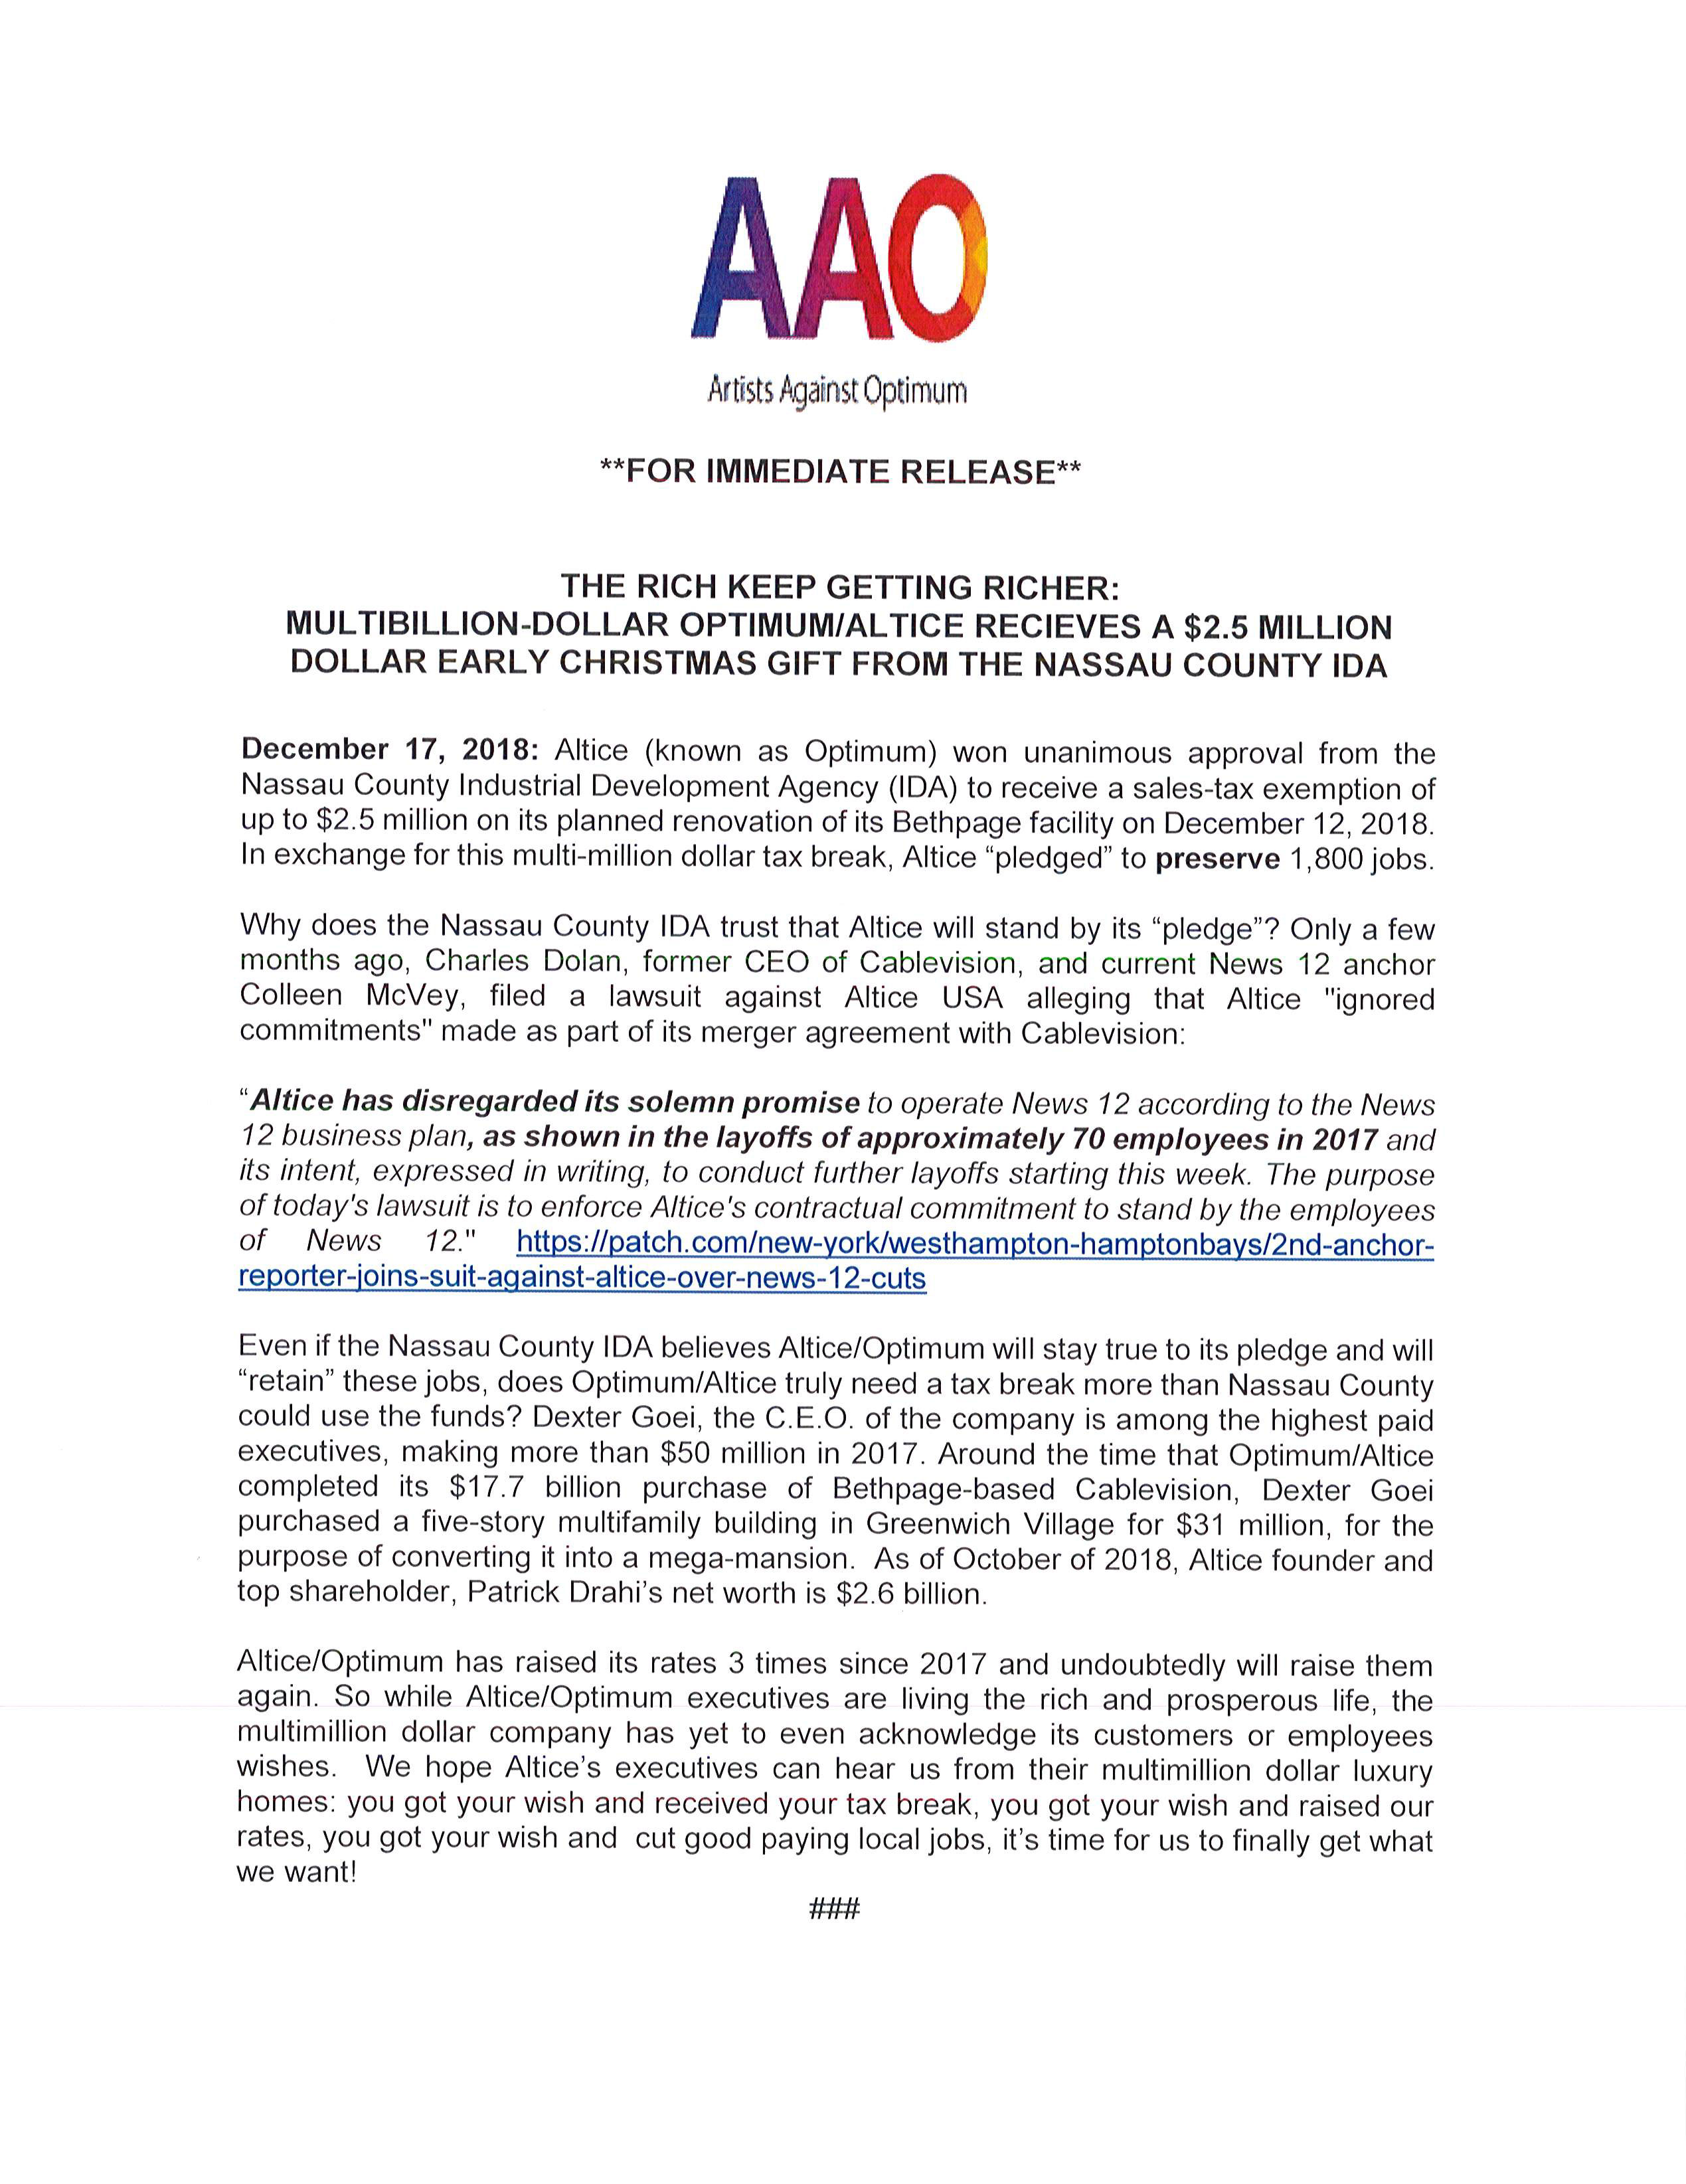 AAO-Press-Release-12.17.18